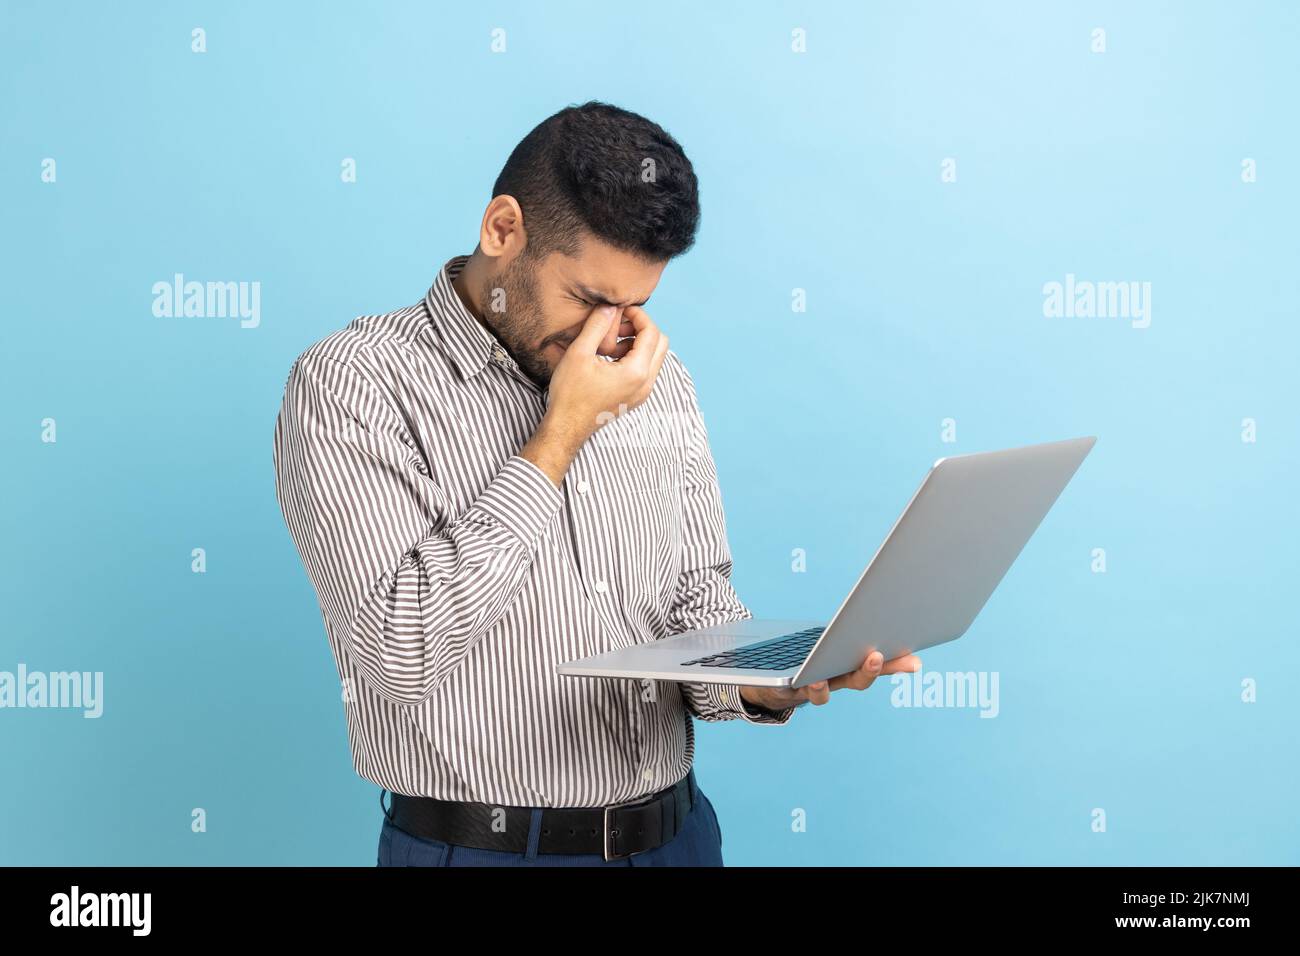 Ritratto di giovane uomo d'affari adulto in piedi con il laptop in mani, strofinando gli occhi, sembra stanco e esausto, indossando una camicia a righe. Studio interno girato isolato su sfondo blu. Foto Stock